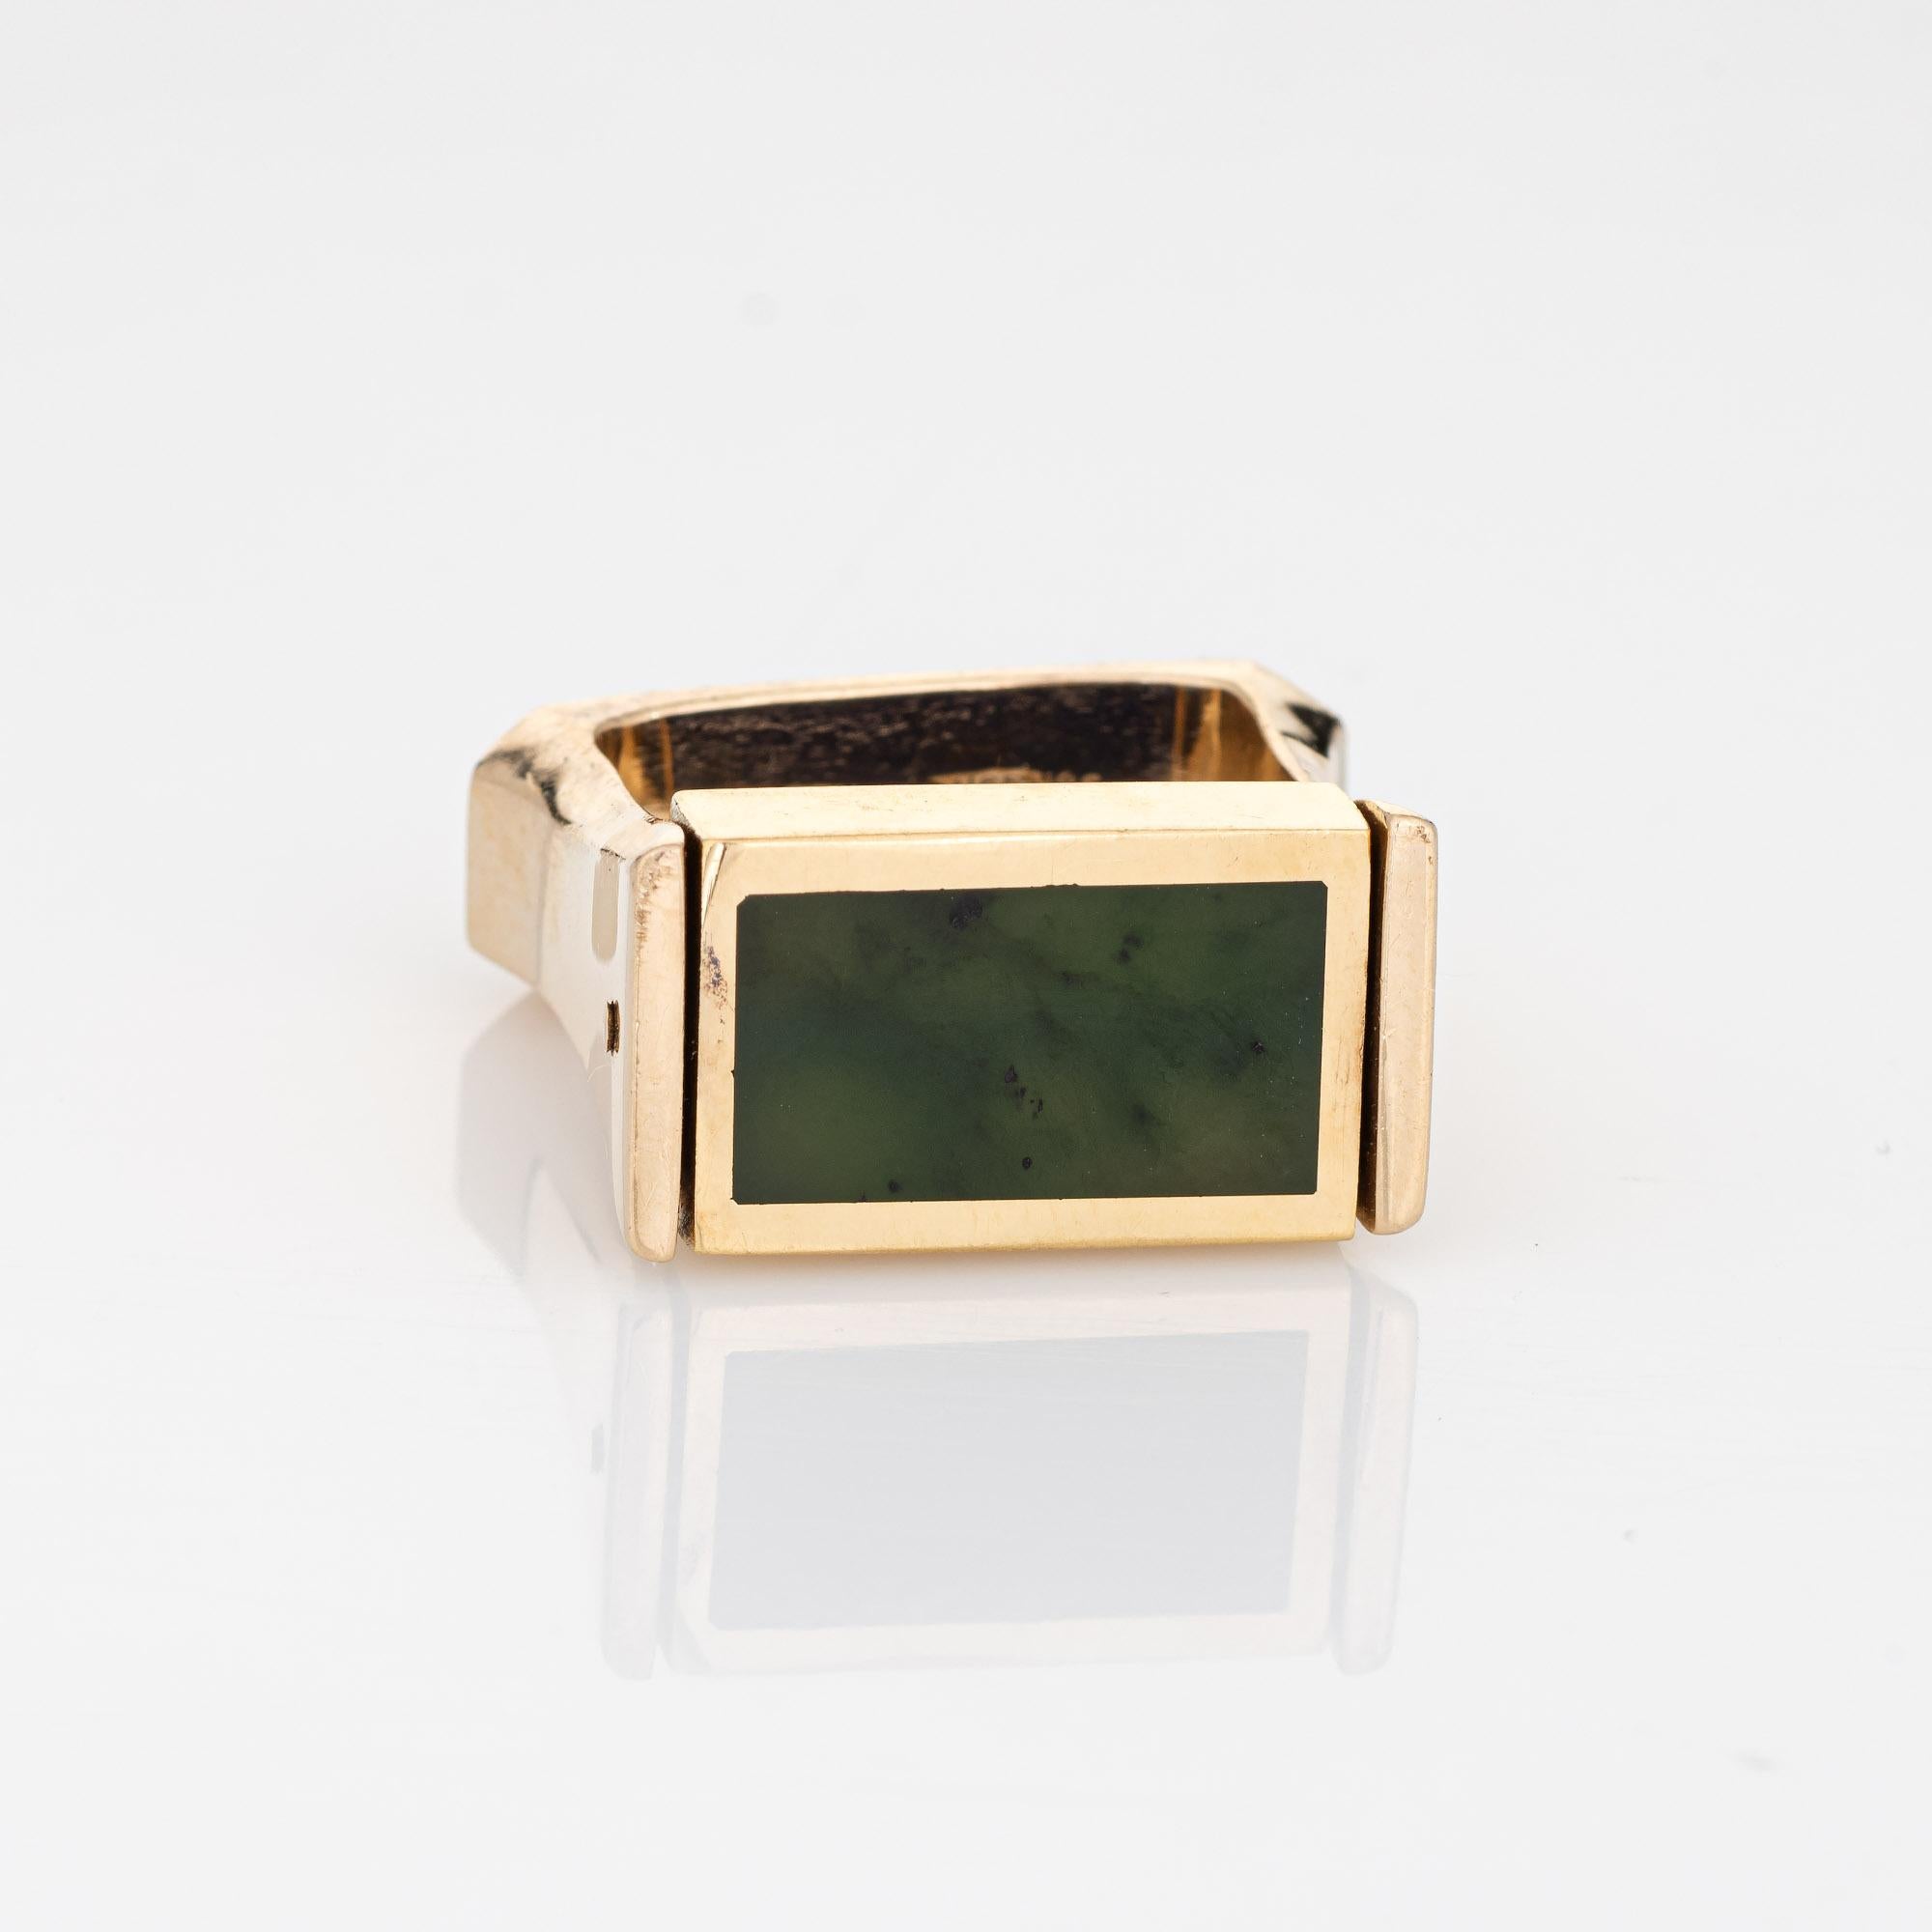 Unverwechselbarer und einzigartiger Vintage-Ring mit eingelegtem Lapislazuli und Jade (ca. 1970er Jahre) aus 14 Karat Gelbgold. 

Nephrit Jade und Lapislazuli misst 15mm x 8mm. Die Edelsteine sind in sehr gutem Zustand und frei von Rissen oder